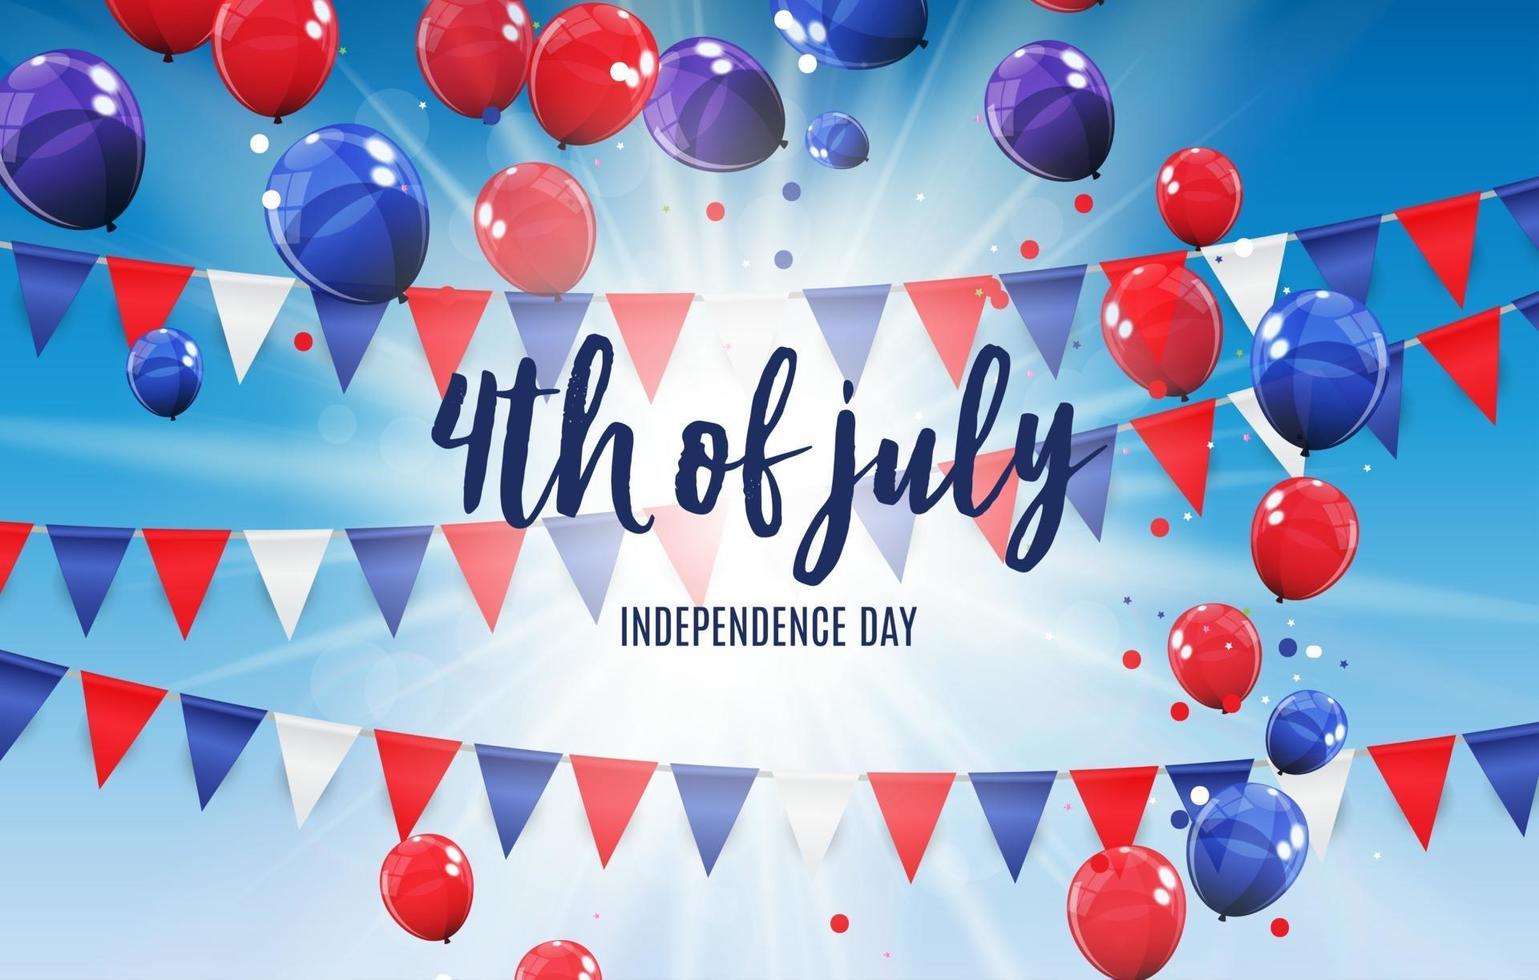 Juli, 4 Unabhängigkeitstag in den USA Hintergrund. kann als Banner oder Poster verwendet werden. vektor